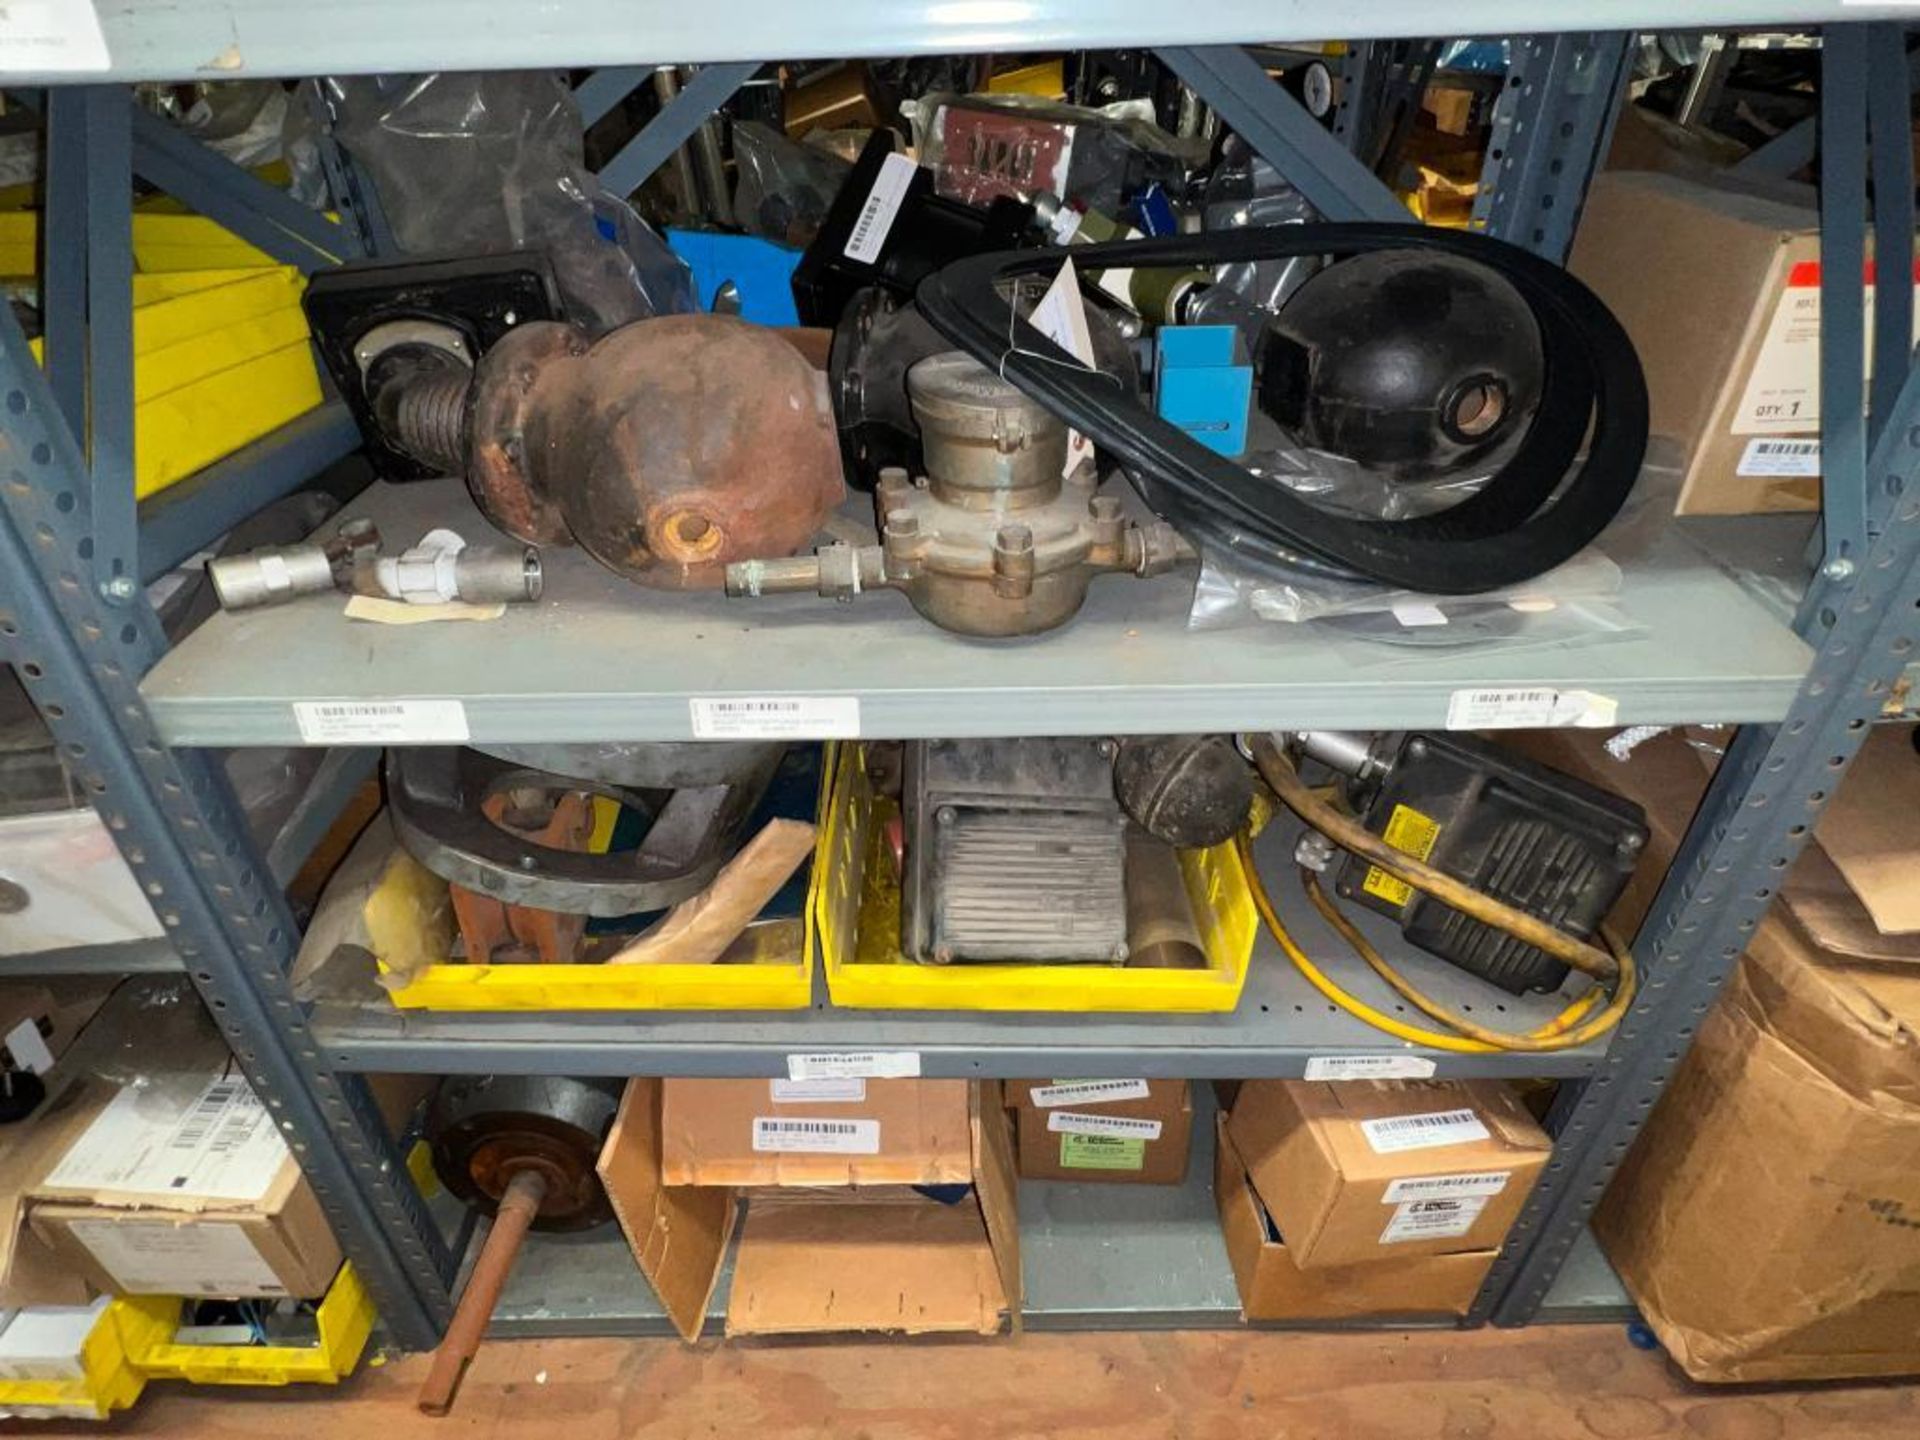 Assorted Gear Boxes, Auger Bit, Door Gaskets, Pump, Pump and Pump Parts, (2) Baldor .75 HP Motors - Image 21 of 35